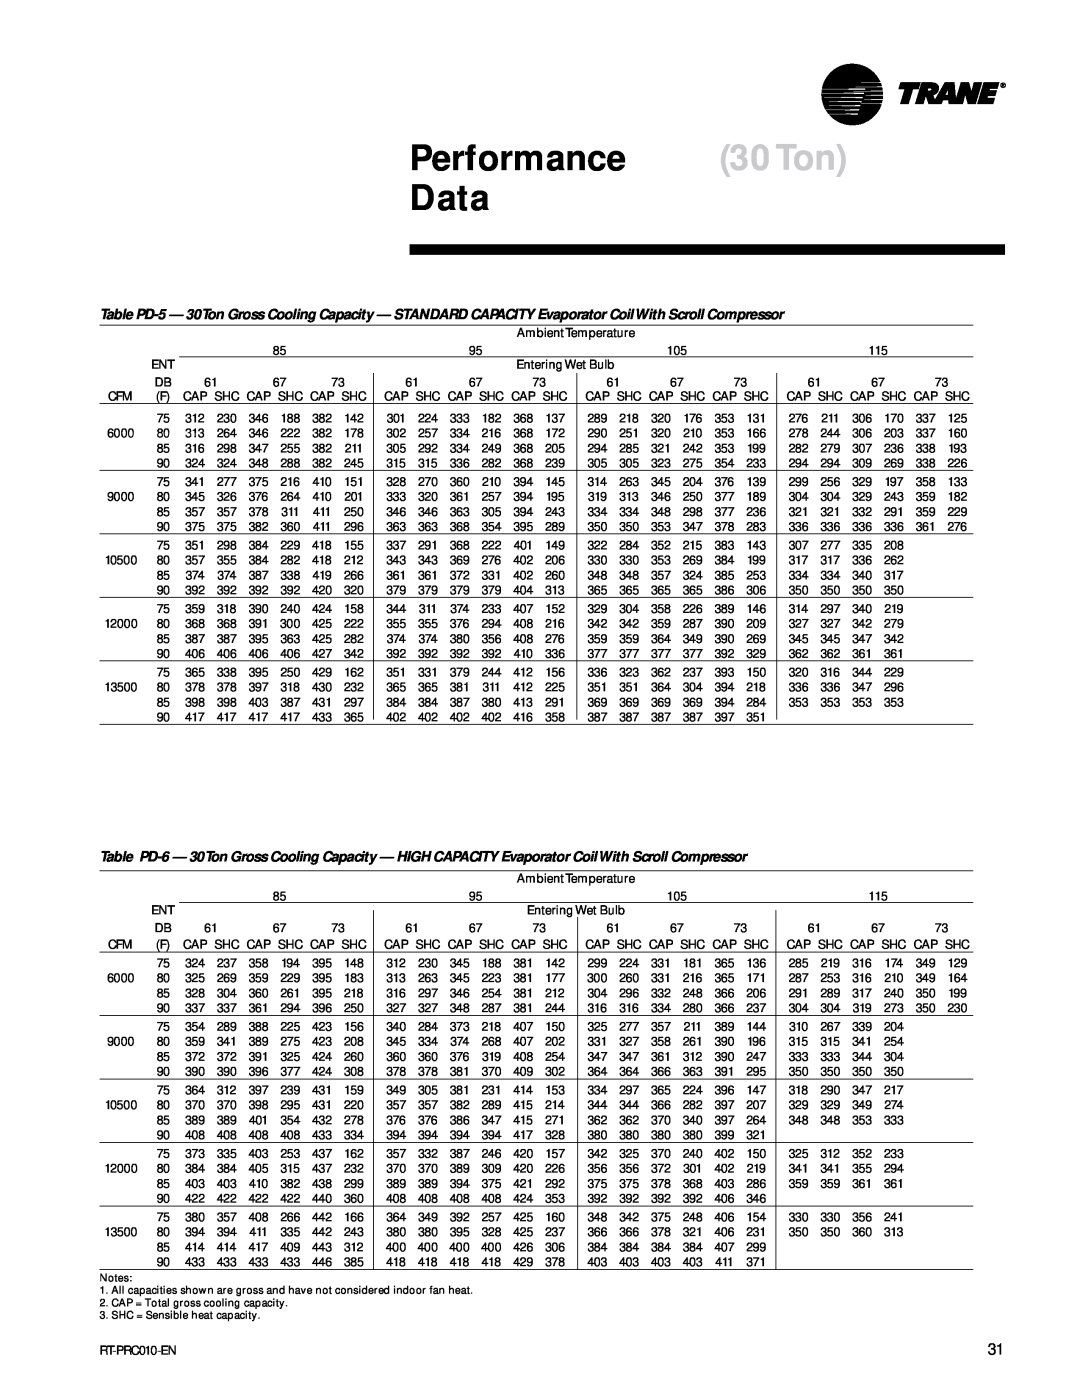 Trane RT-PRC010-EN manual Performance 30Ton Data 